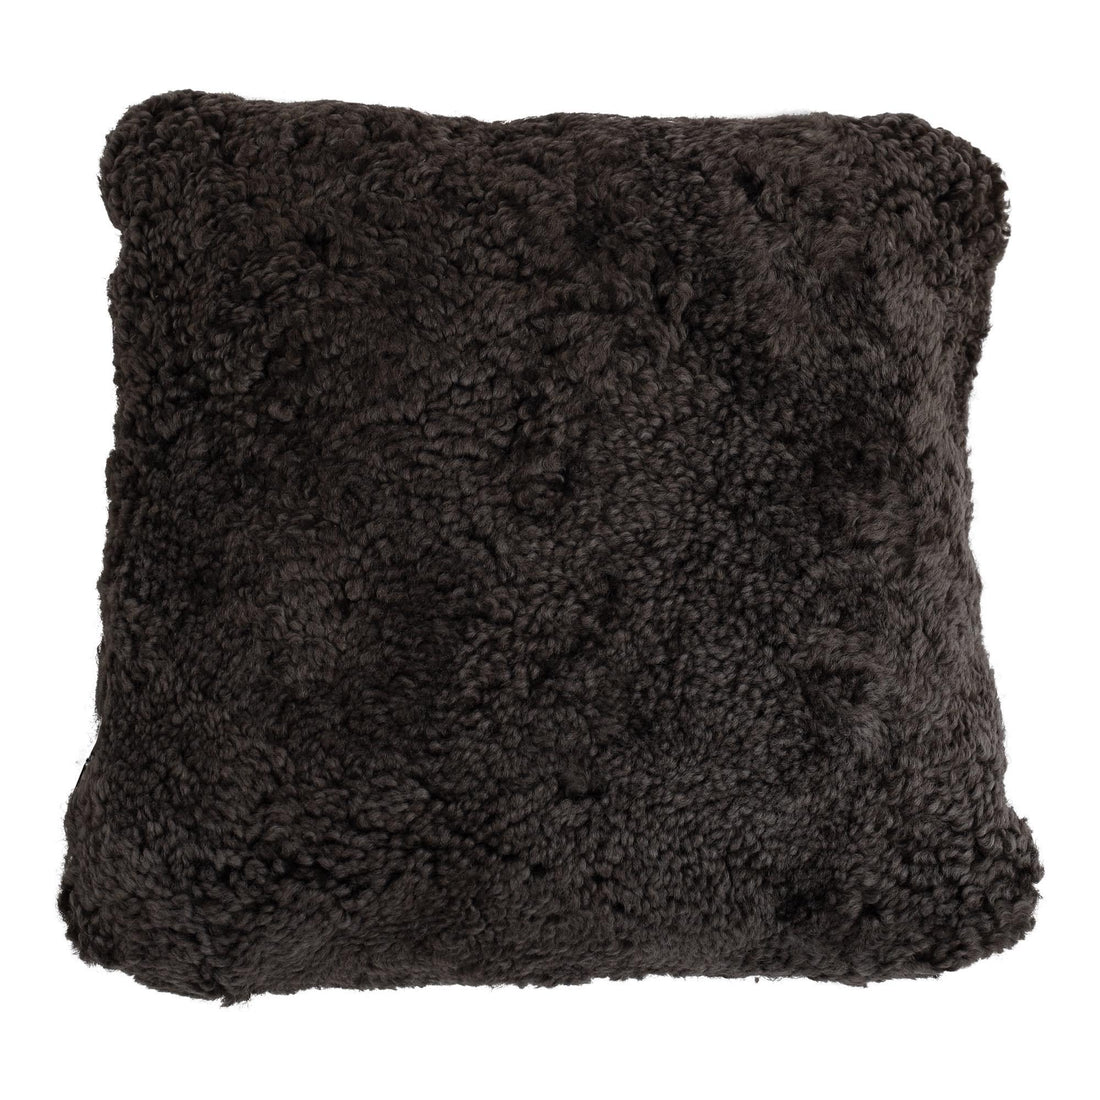 Pillow | Lambskin | Short Hair | New Zealand | 40x40 cm.